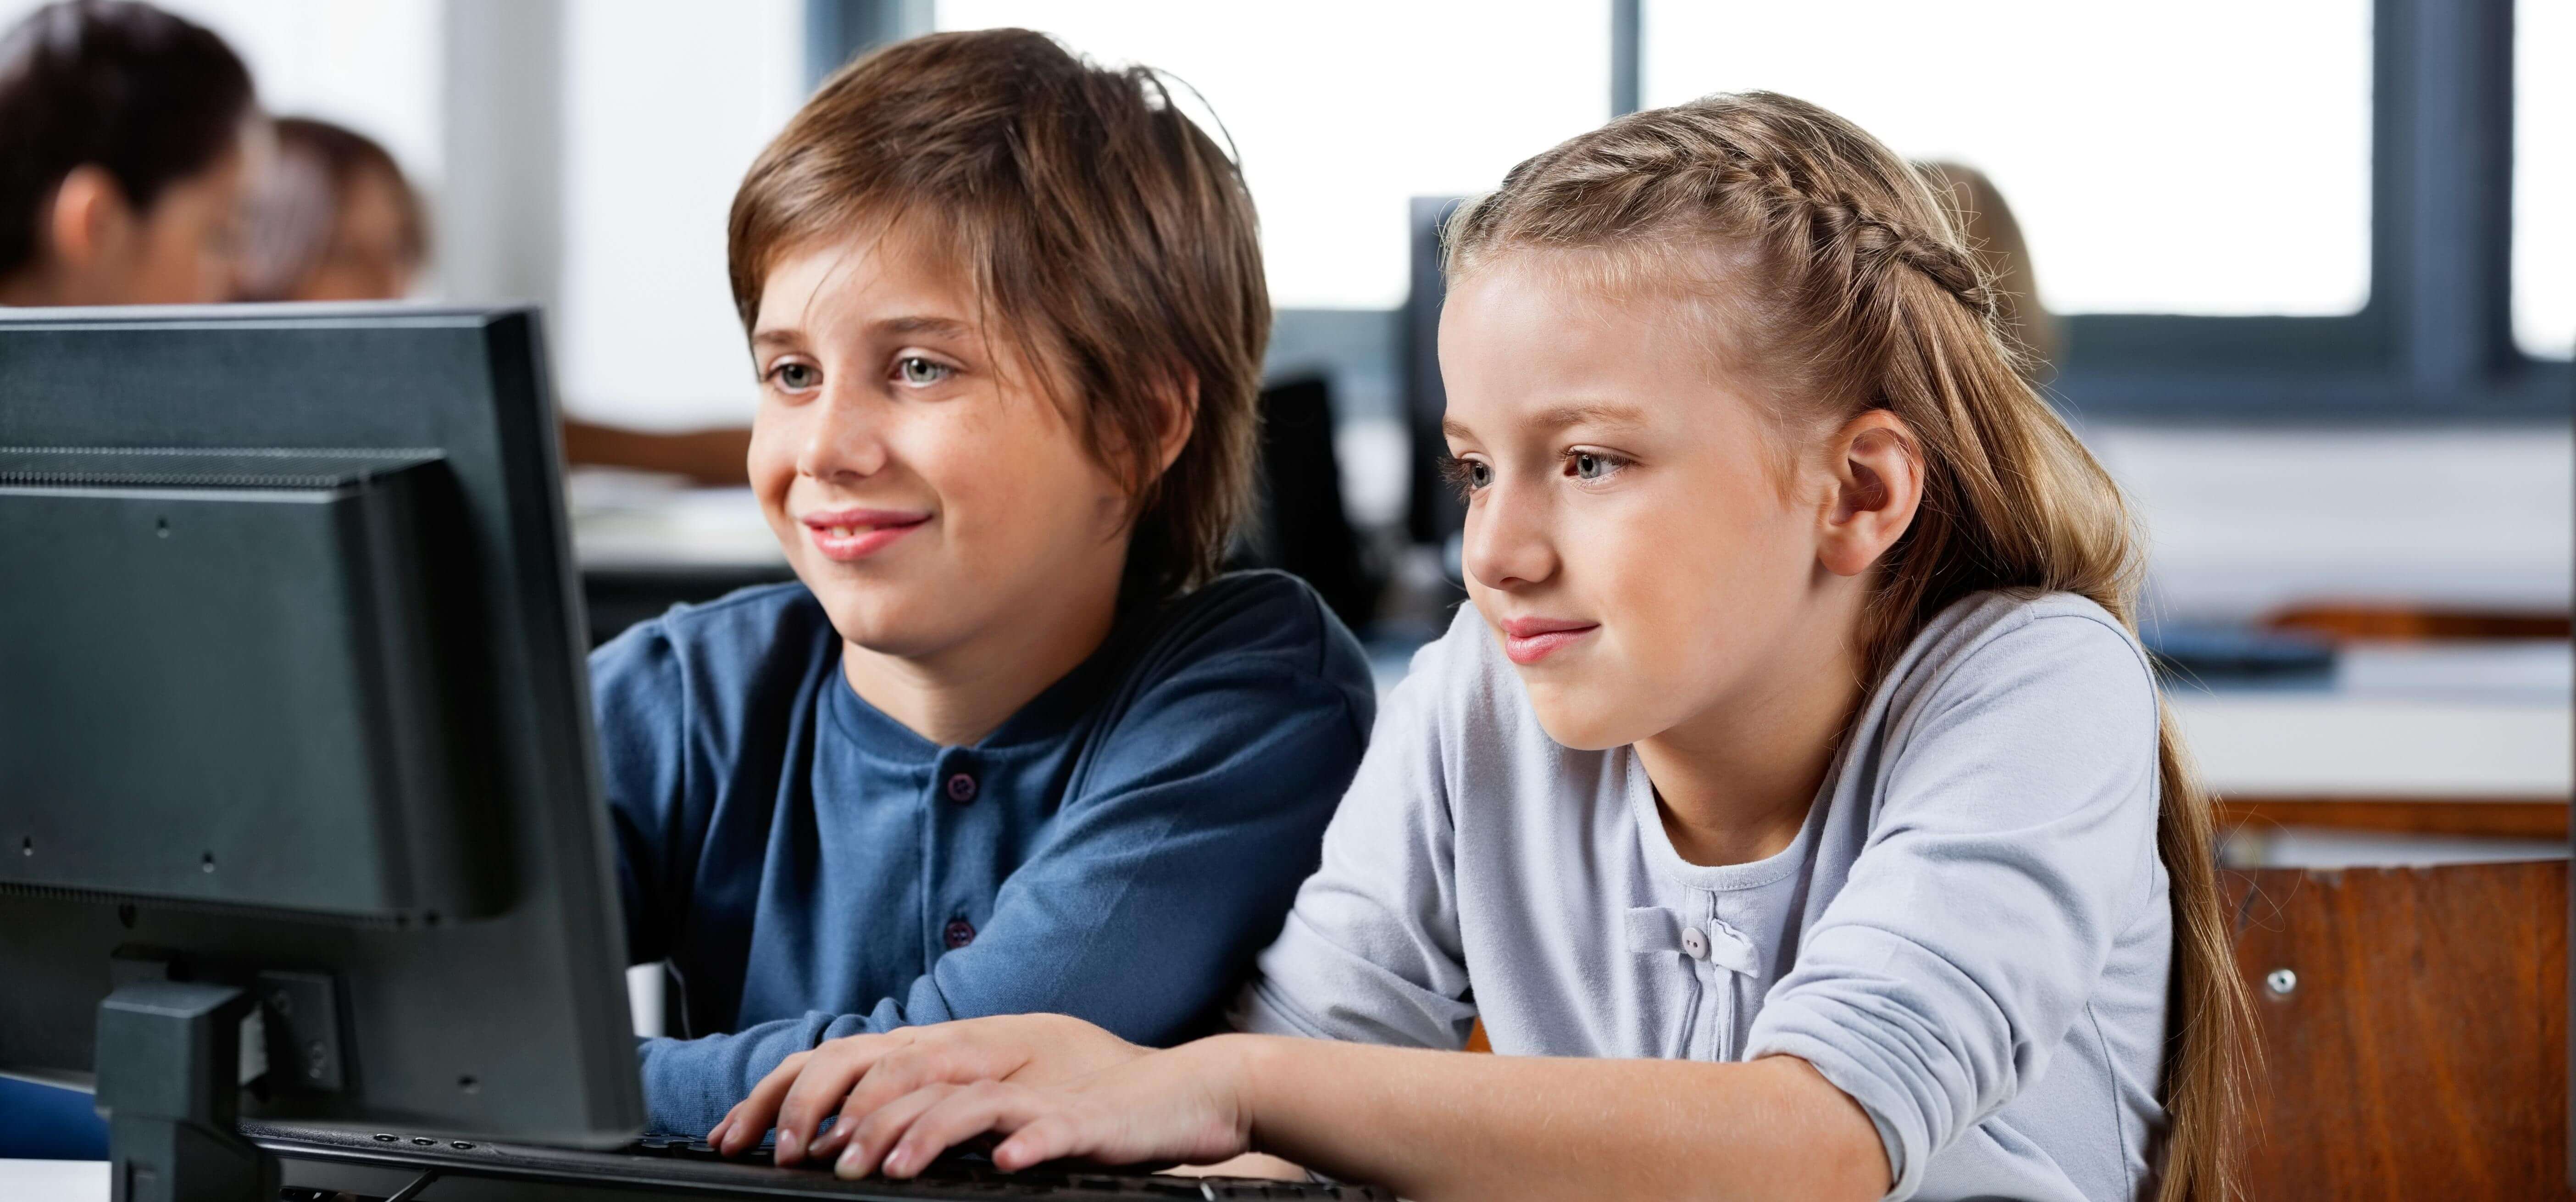 Сайт смотрим. Школьник за компом. Дети в компьютерном классе. Ученик за компьютером. Ребенок за компьютером.